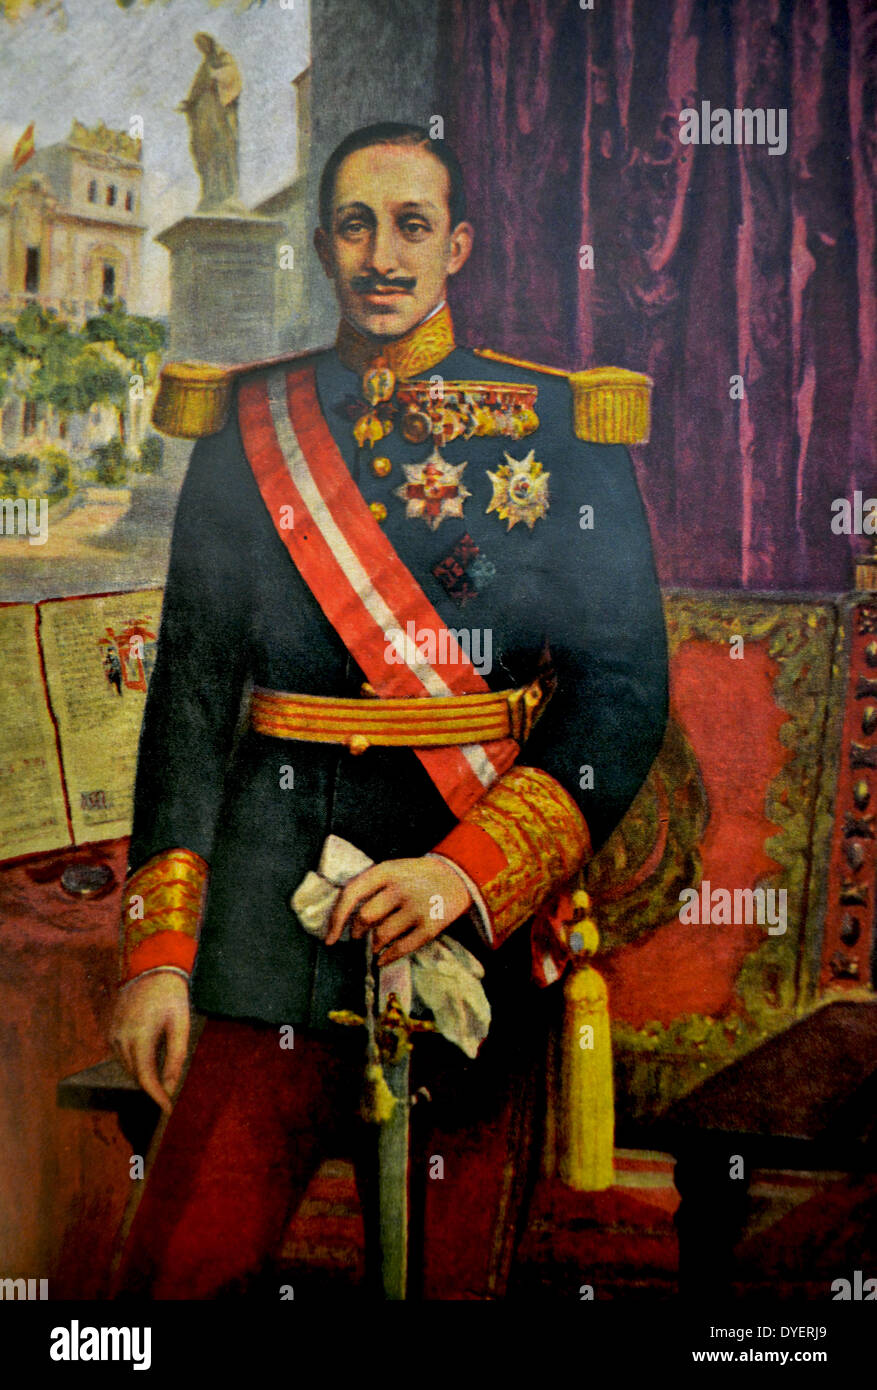 Alfonso XIII 17. Mai 1886 – 28. Februar 1941) war König von Spanien, von 1886 bis 1931. Stockfoto